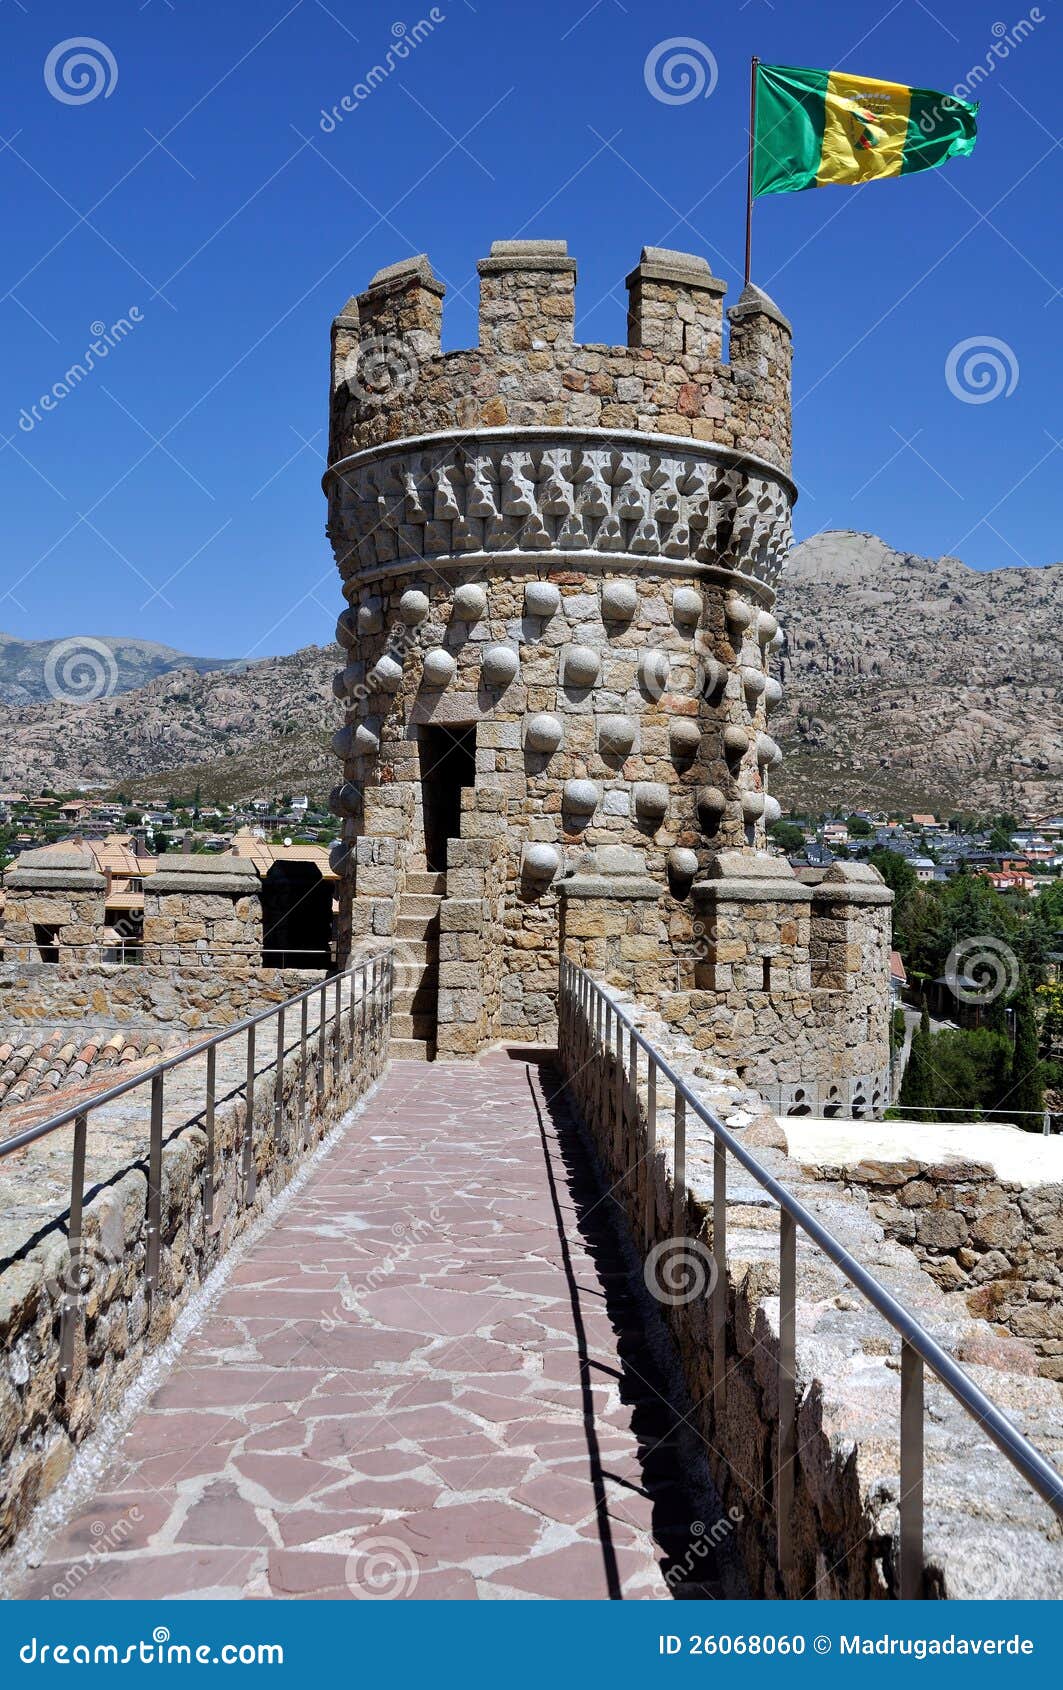 manzanares el real castle (vertical)